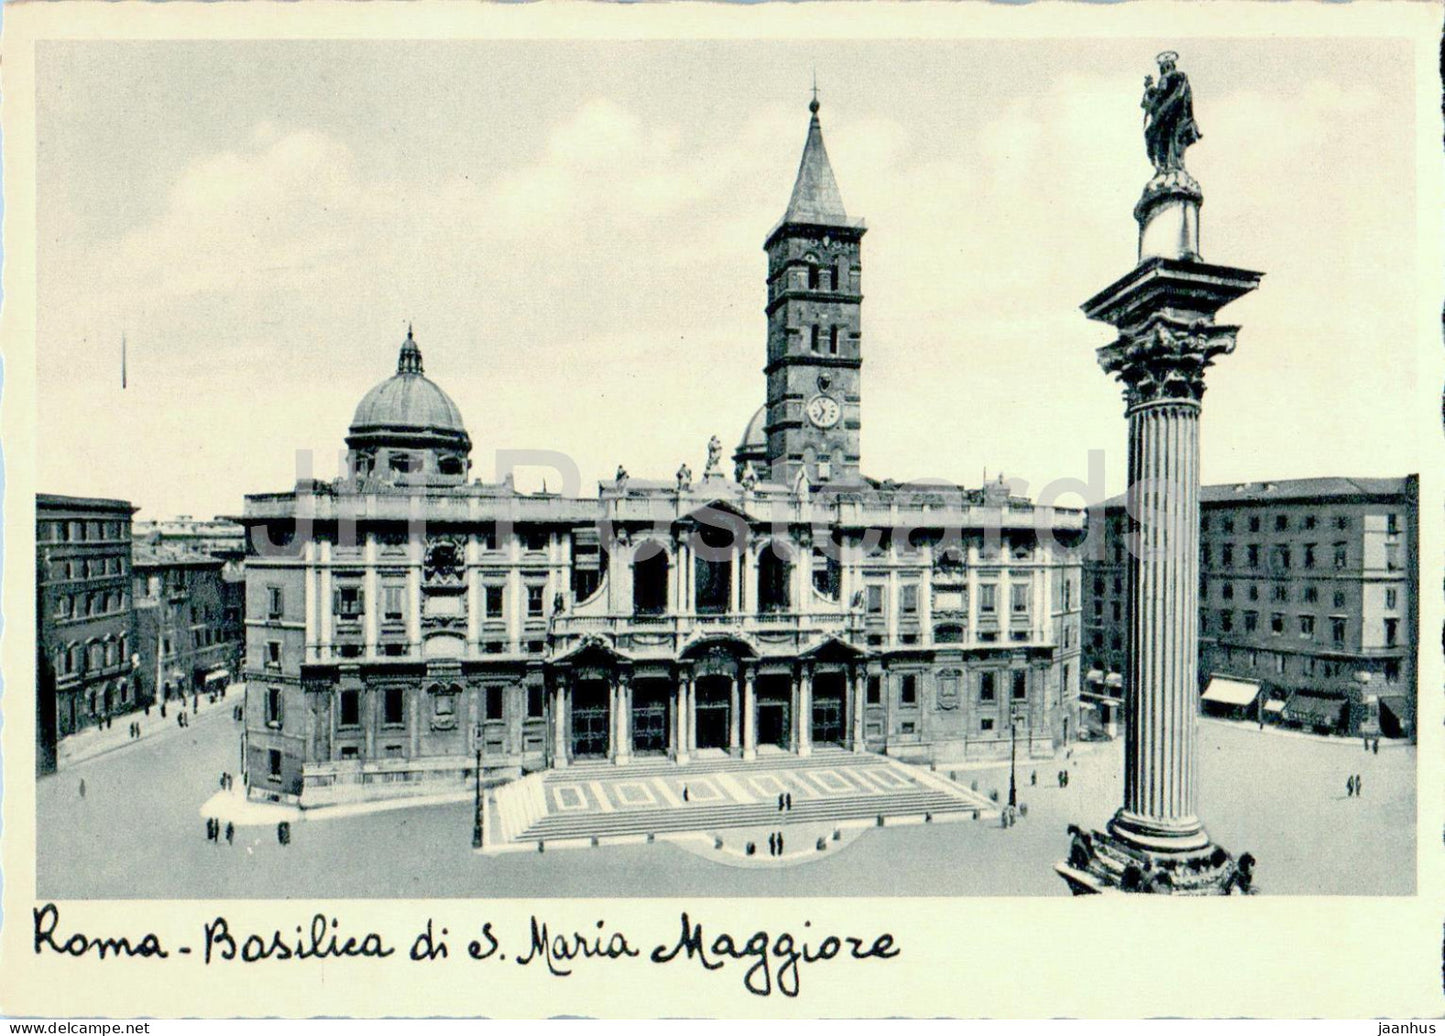 Roma - Rome - Basilica di S Maria Maggiore - old postcard - 1934 - Italy - unused - JH Postcards